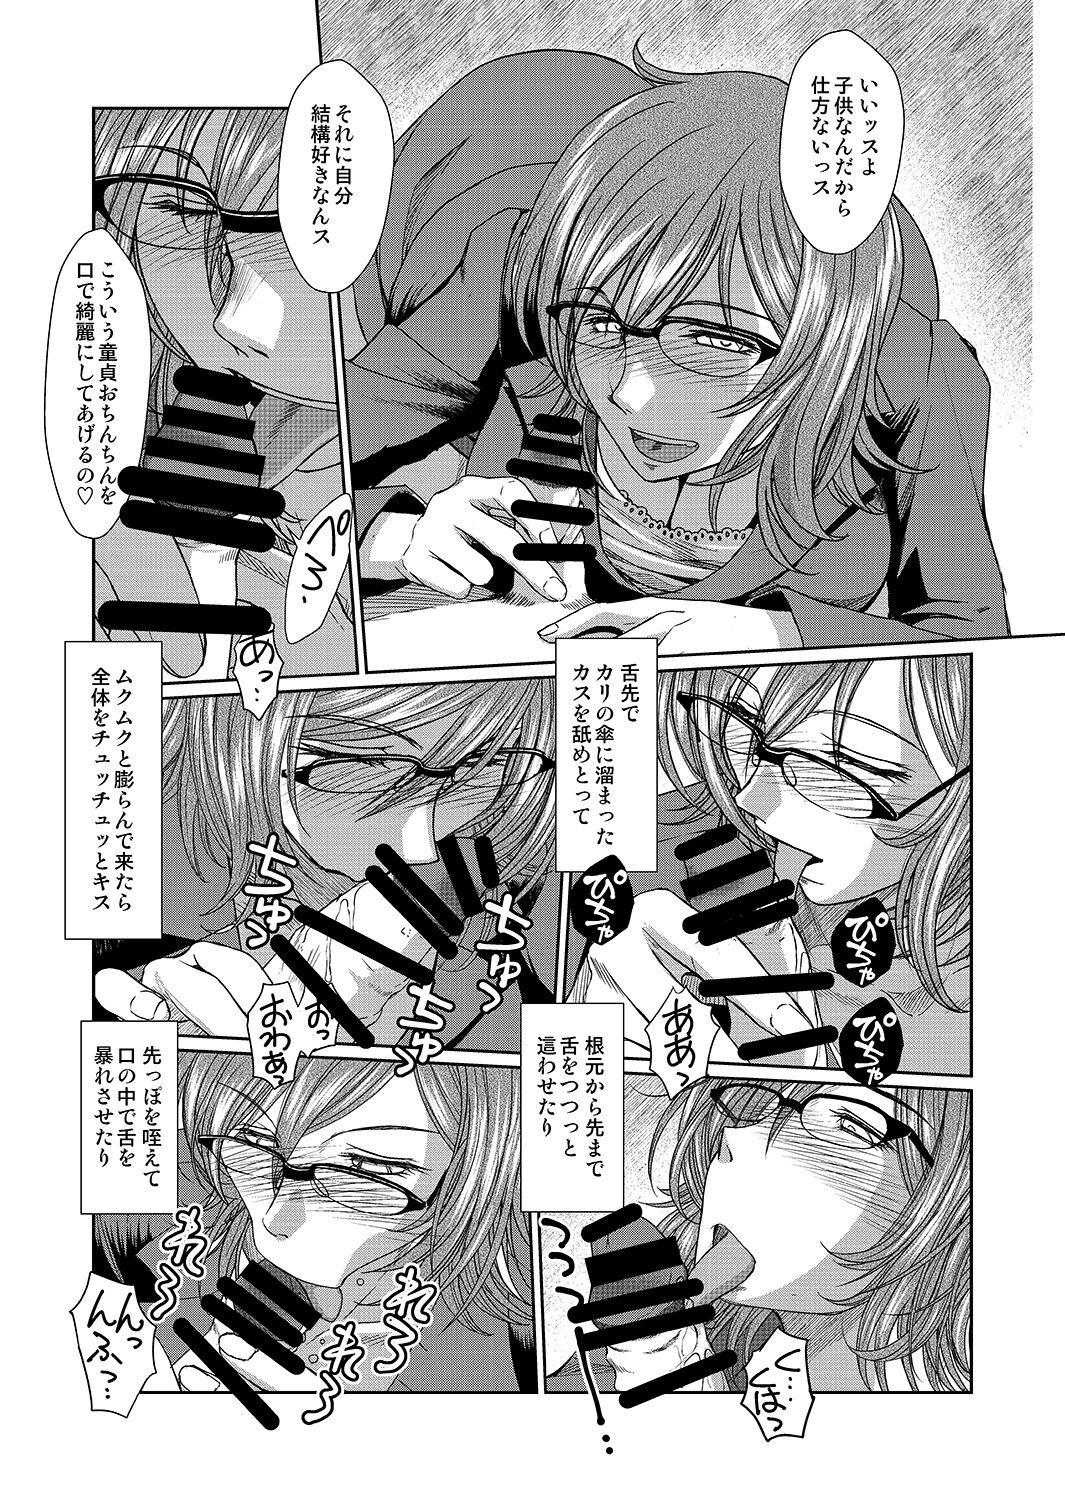 Transexual Dagashiya no Onna - Dagashi kashi Defloration - Page 8